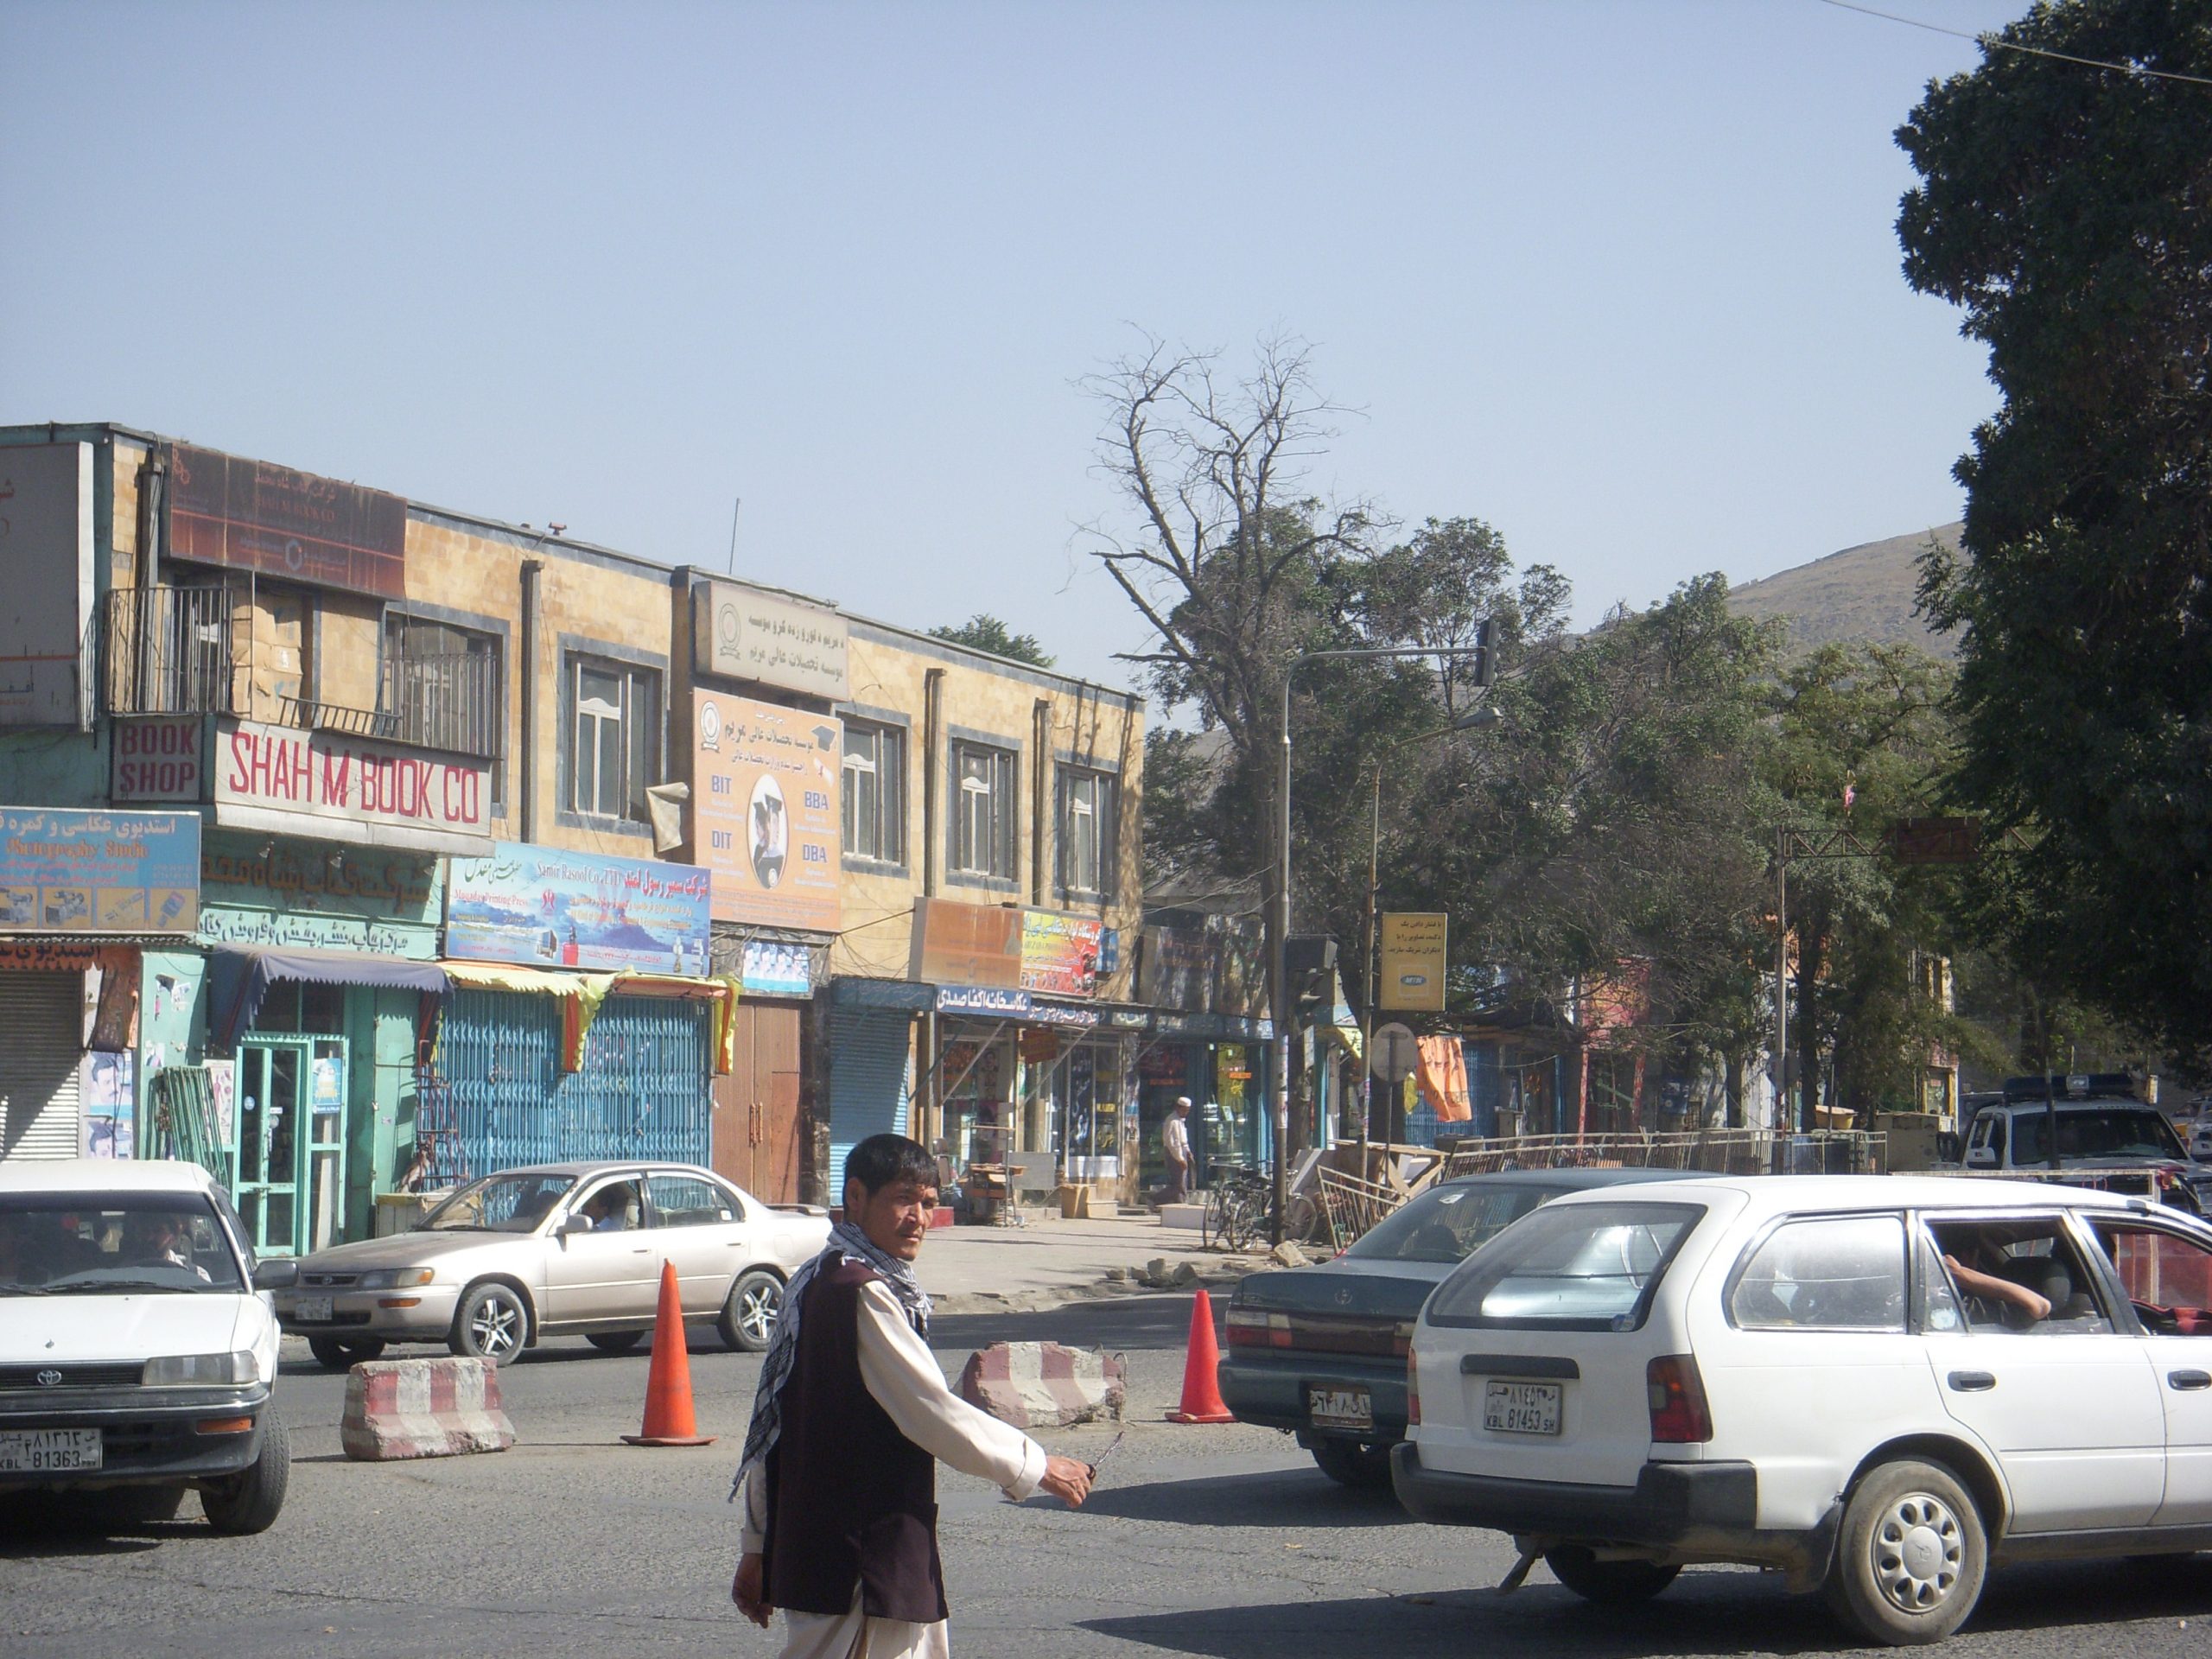 A livraria Shah M. Books, centro da narrativa do best-seller O Livreiro de Cabul: decepção dos afegãos com ajuda internacional que só beneficiou elite (Foto: Florência Costa - Agosto/2009)